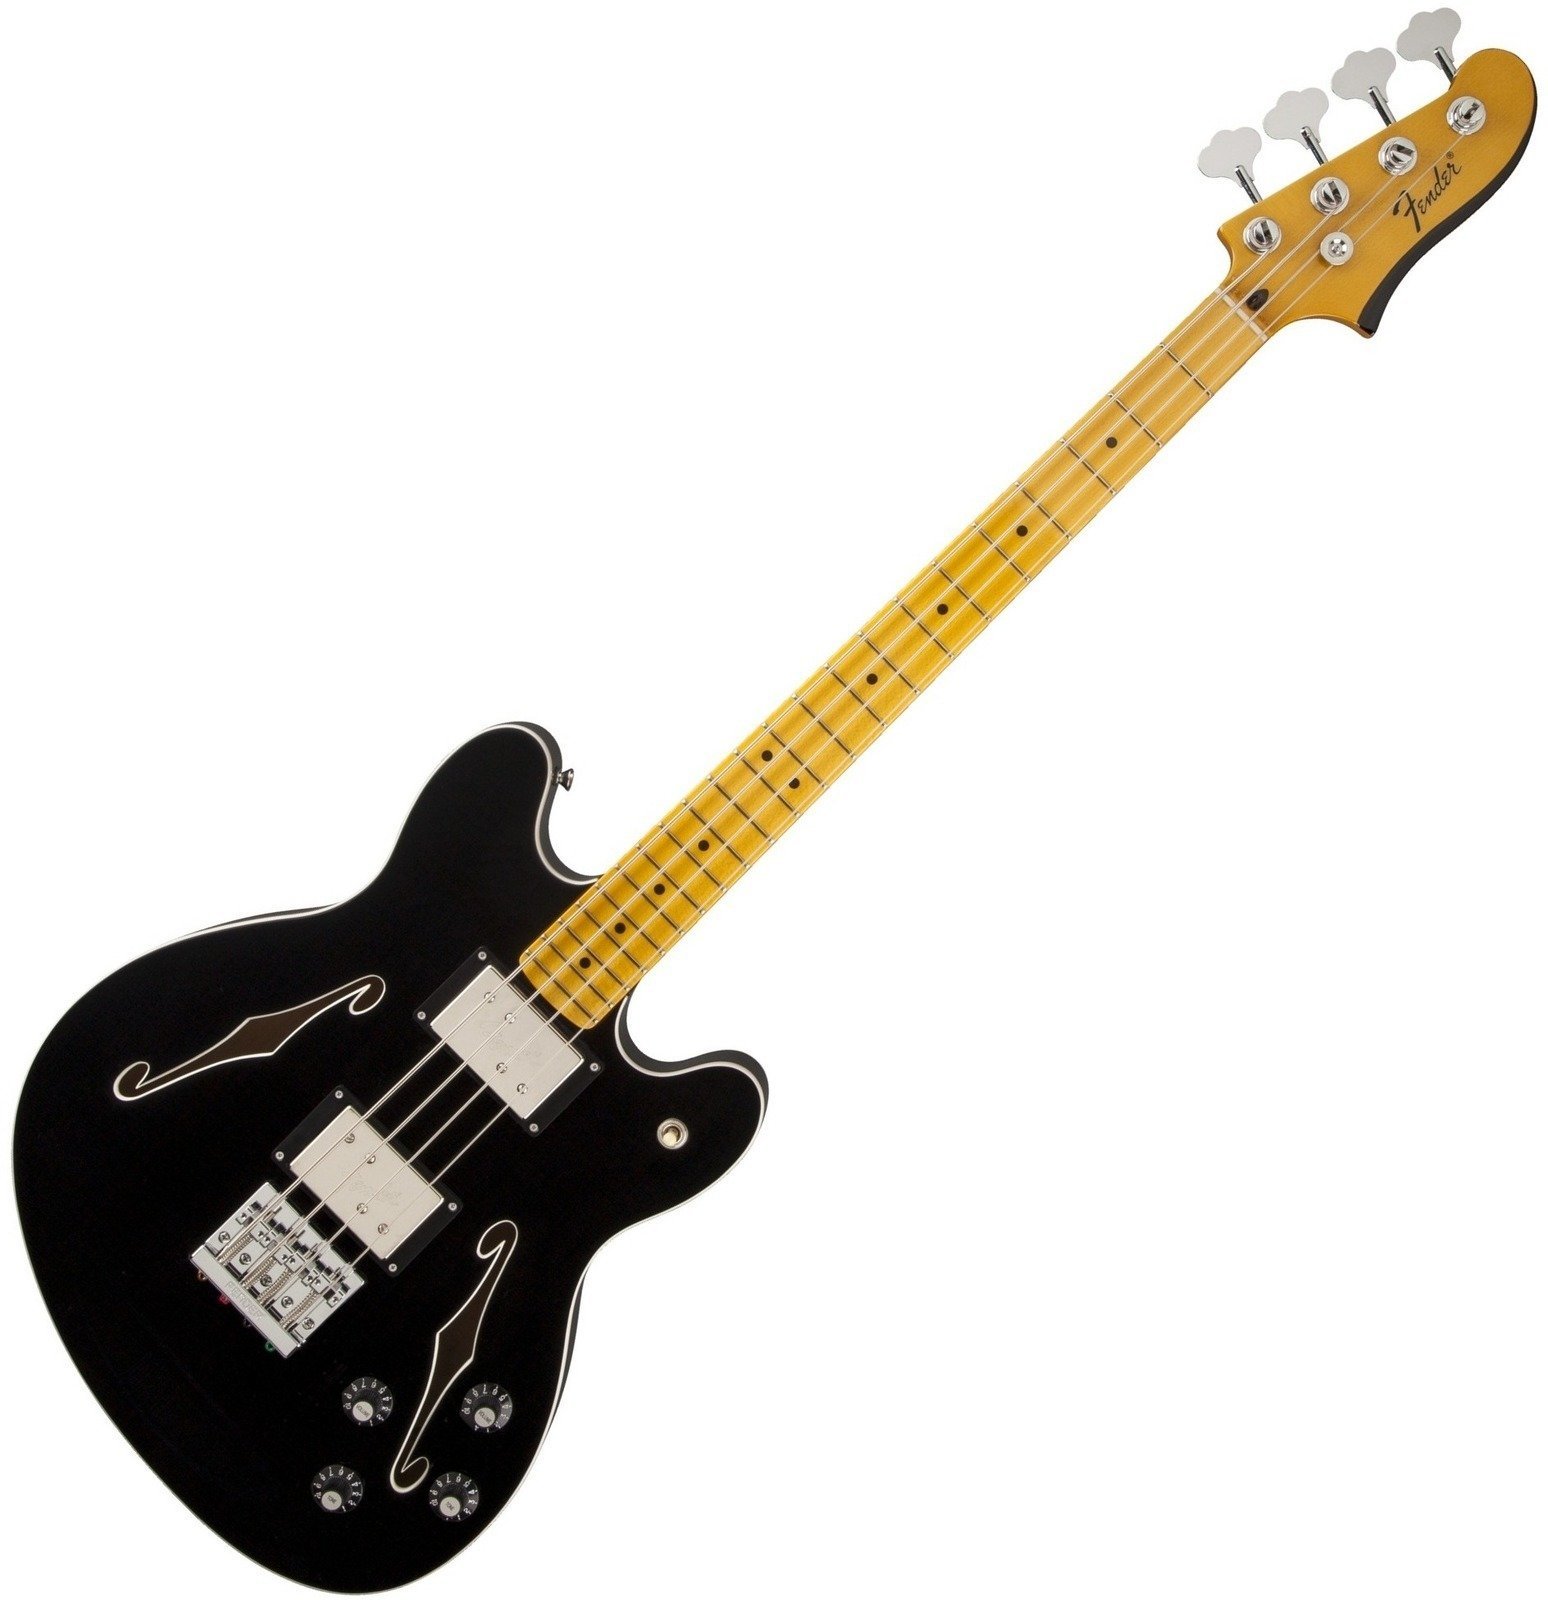 Semiakustická basgitara Fender Starcaster Bass Black